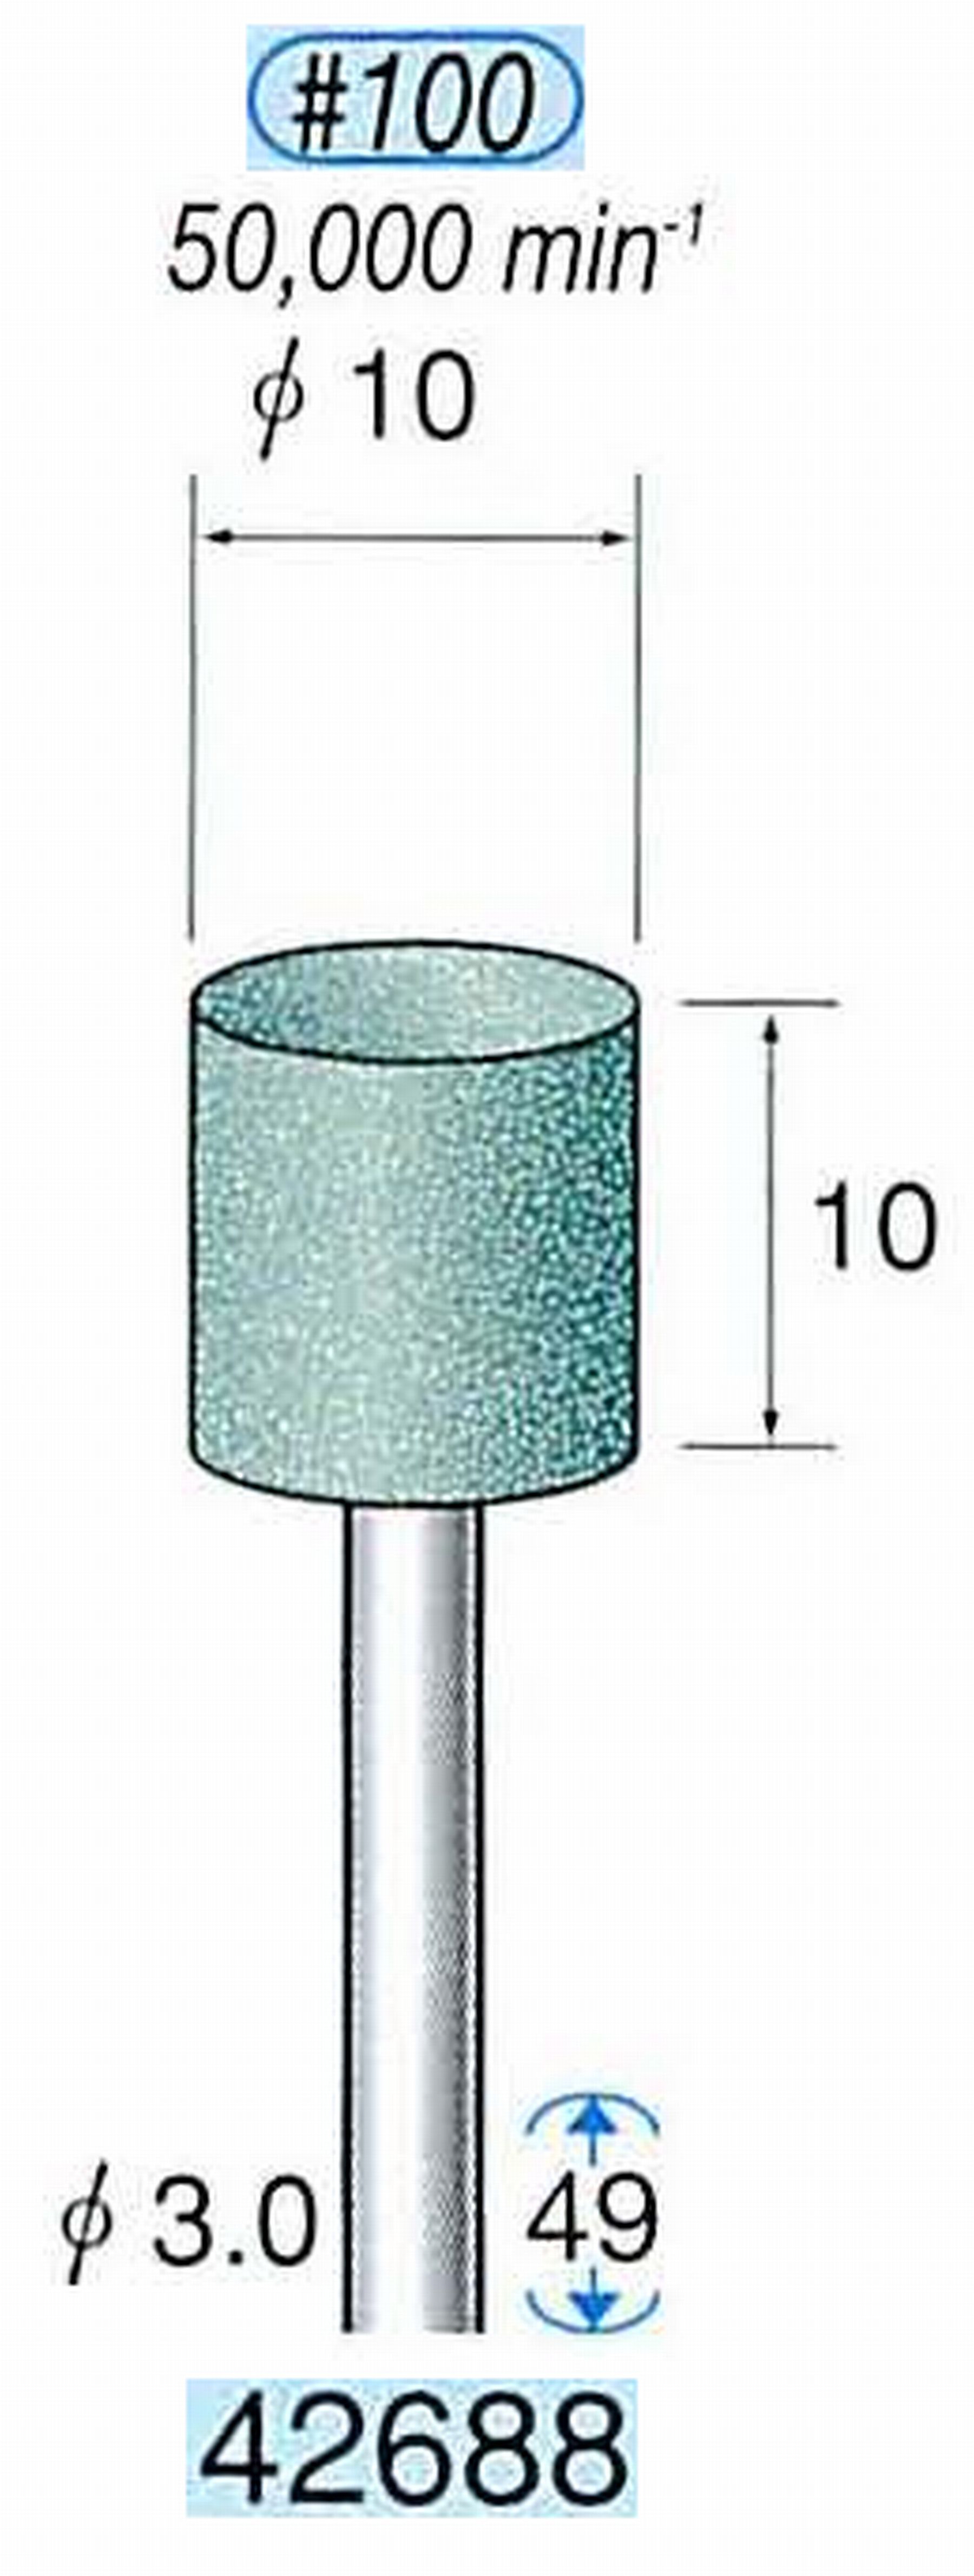 ナカニシ/NAKANISHI 軸付砥石(GC砥粒) グリーン砥石 軸径(シャンク) φ3.0mm 42688